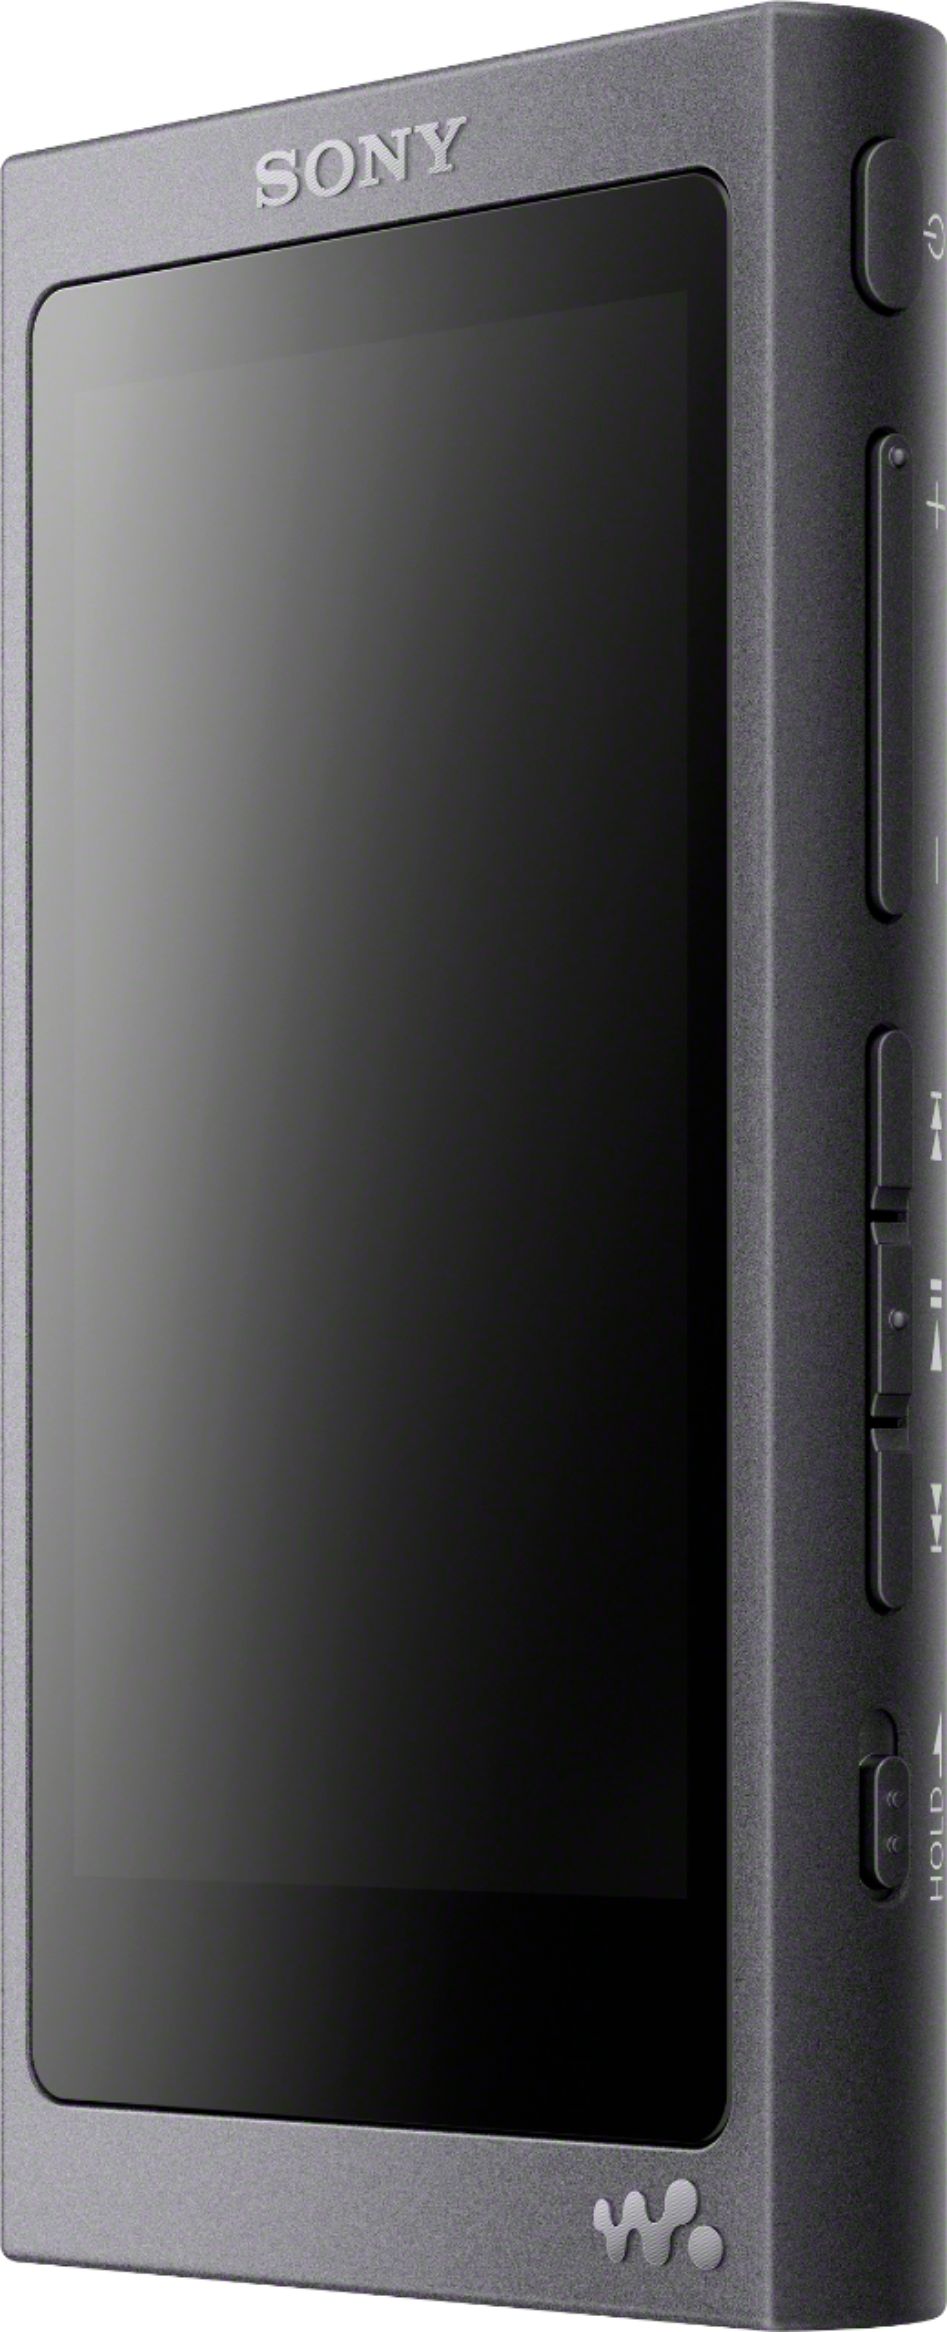 オーディオ機器 ポータブルプレーヤー Sony Walkman Hi-Res NW-A45 16GB* MP3 Player  - Best Buy